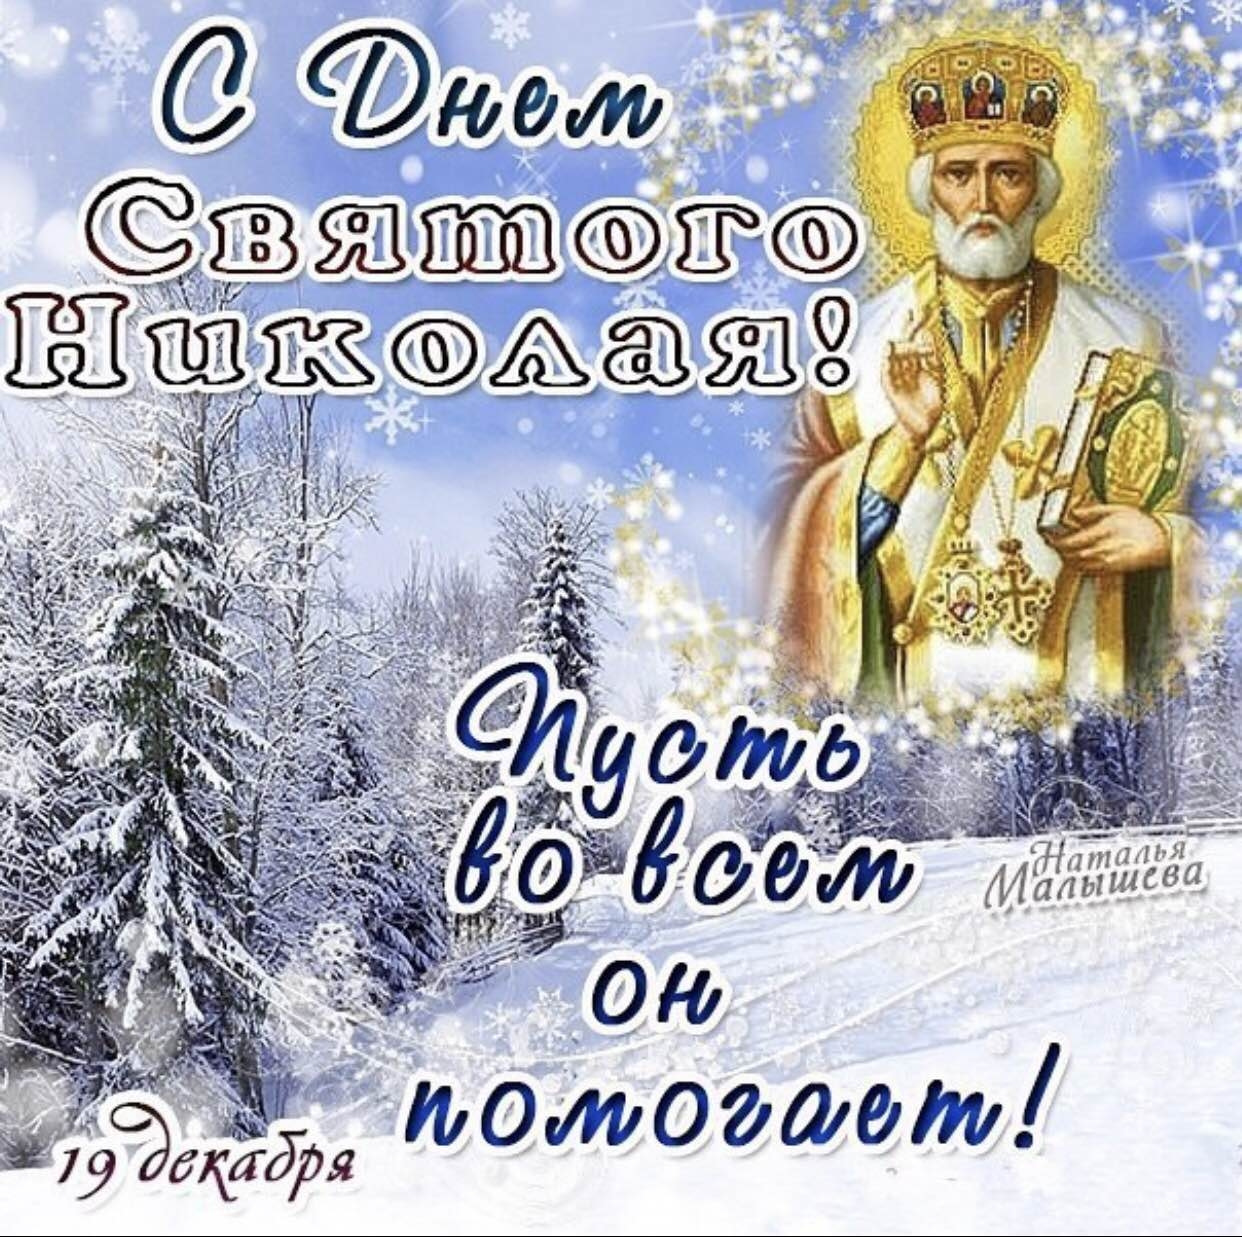 Число святого николая. С днем св Николая Чудотворца 19 декабря. Картинки с Николаем чудотворцем 19 декабря.